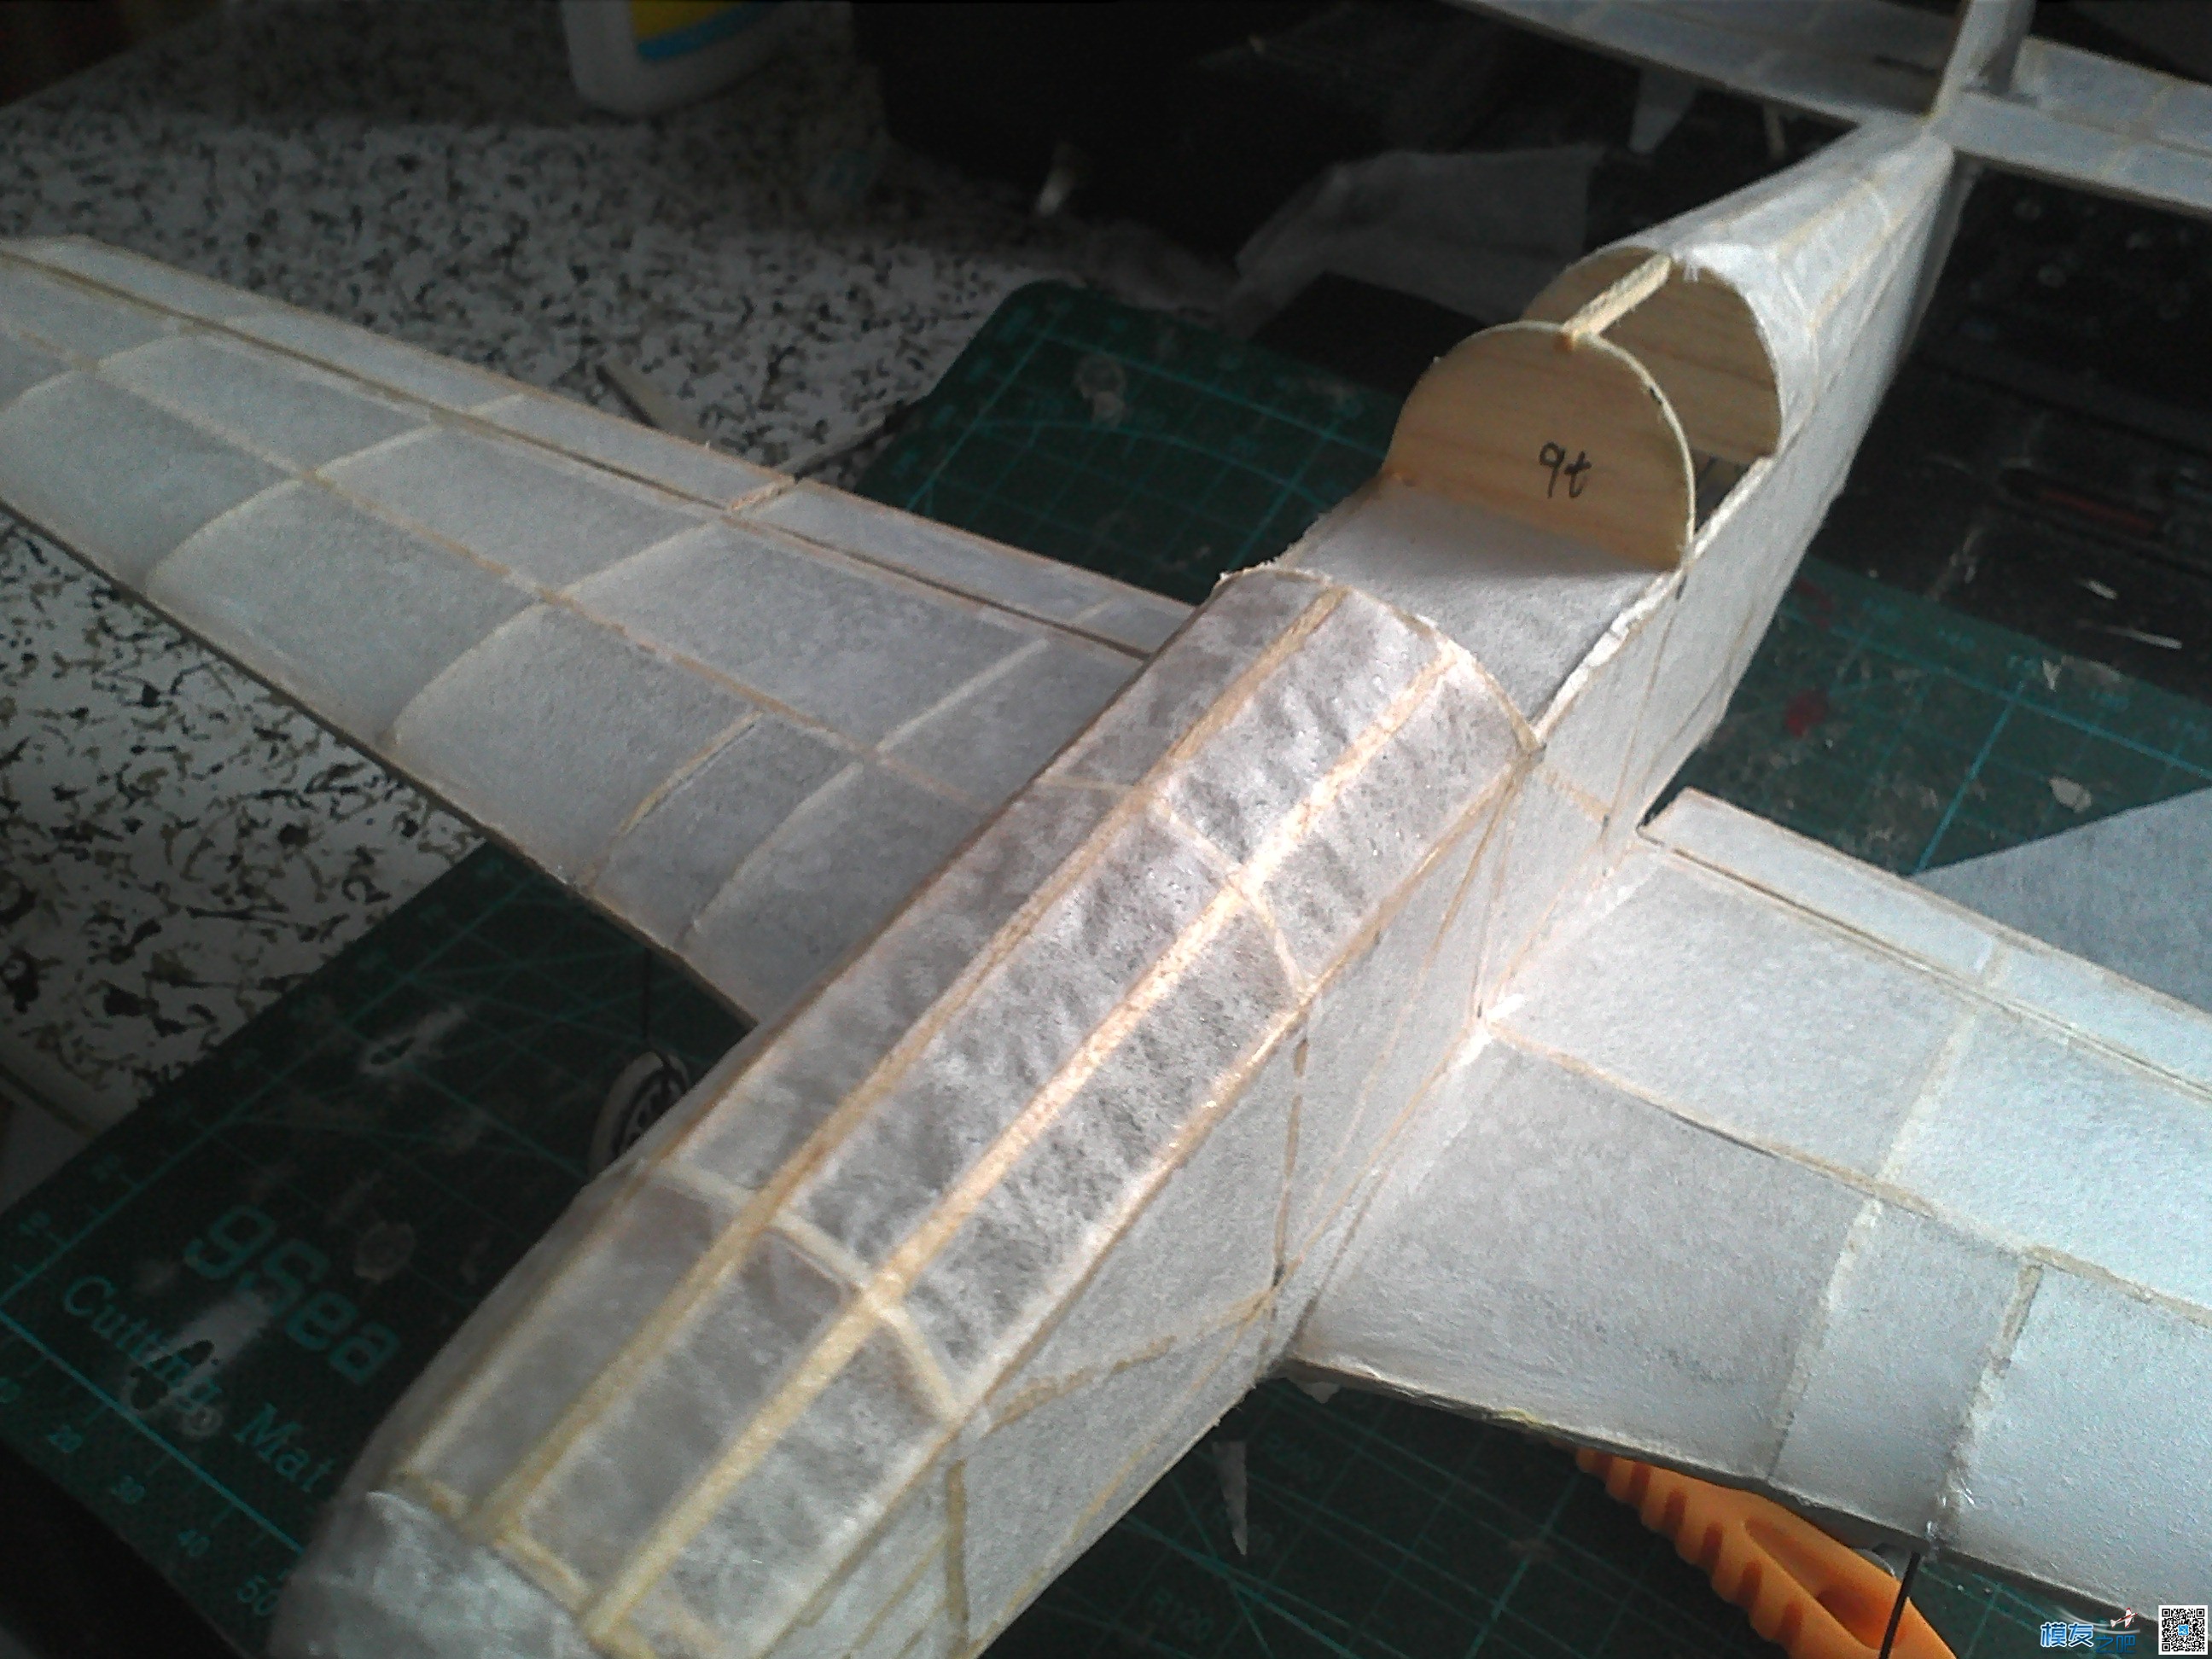 迷你轻木机野马P51a 固定翼,舵机,图纸,接收机 作者:飞翔的橡皮筋 8014 